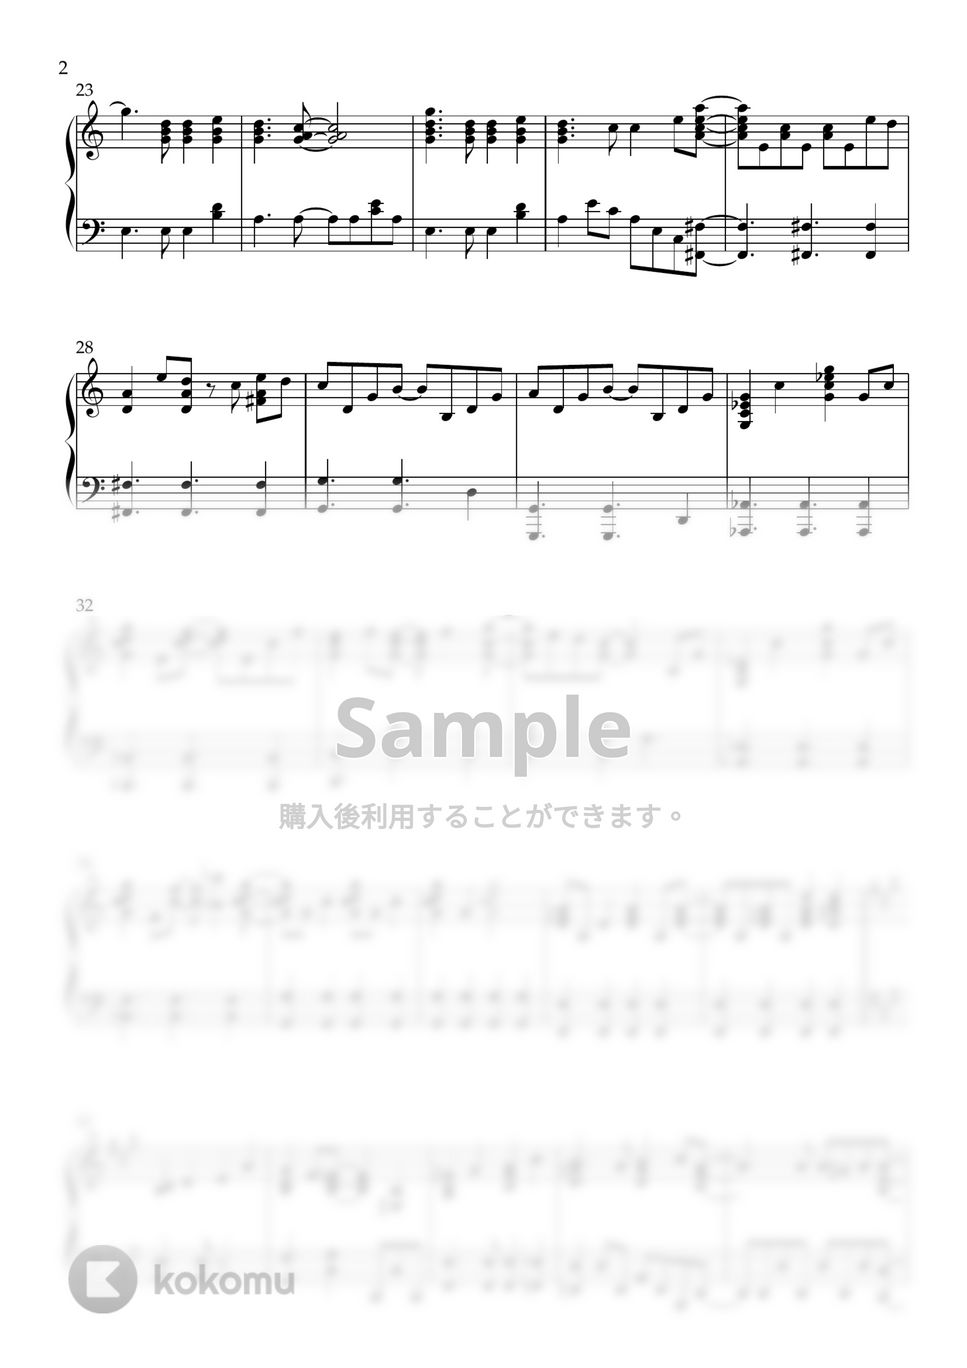 와타나베 첼 - 夢色パティシエール - Yell for the Dream (Opening Theme) (PIANO SOLO) by CLOUD LADDER 구름사다리뮤직